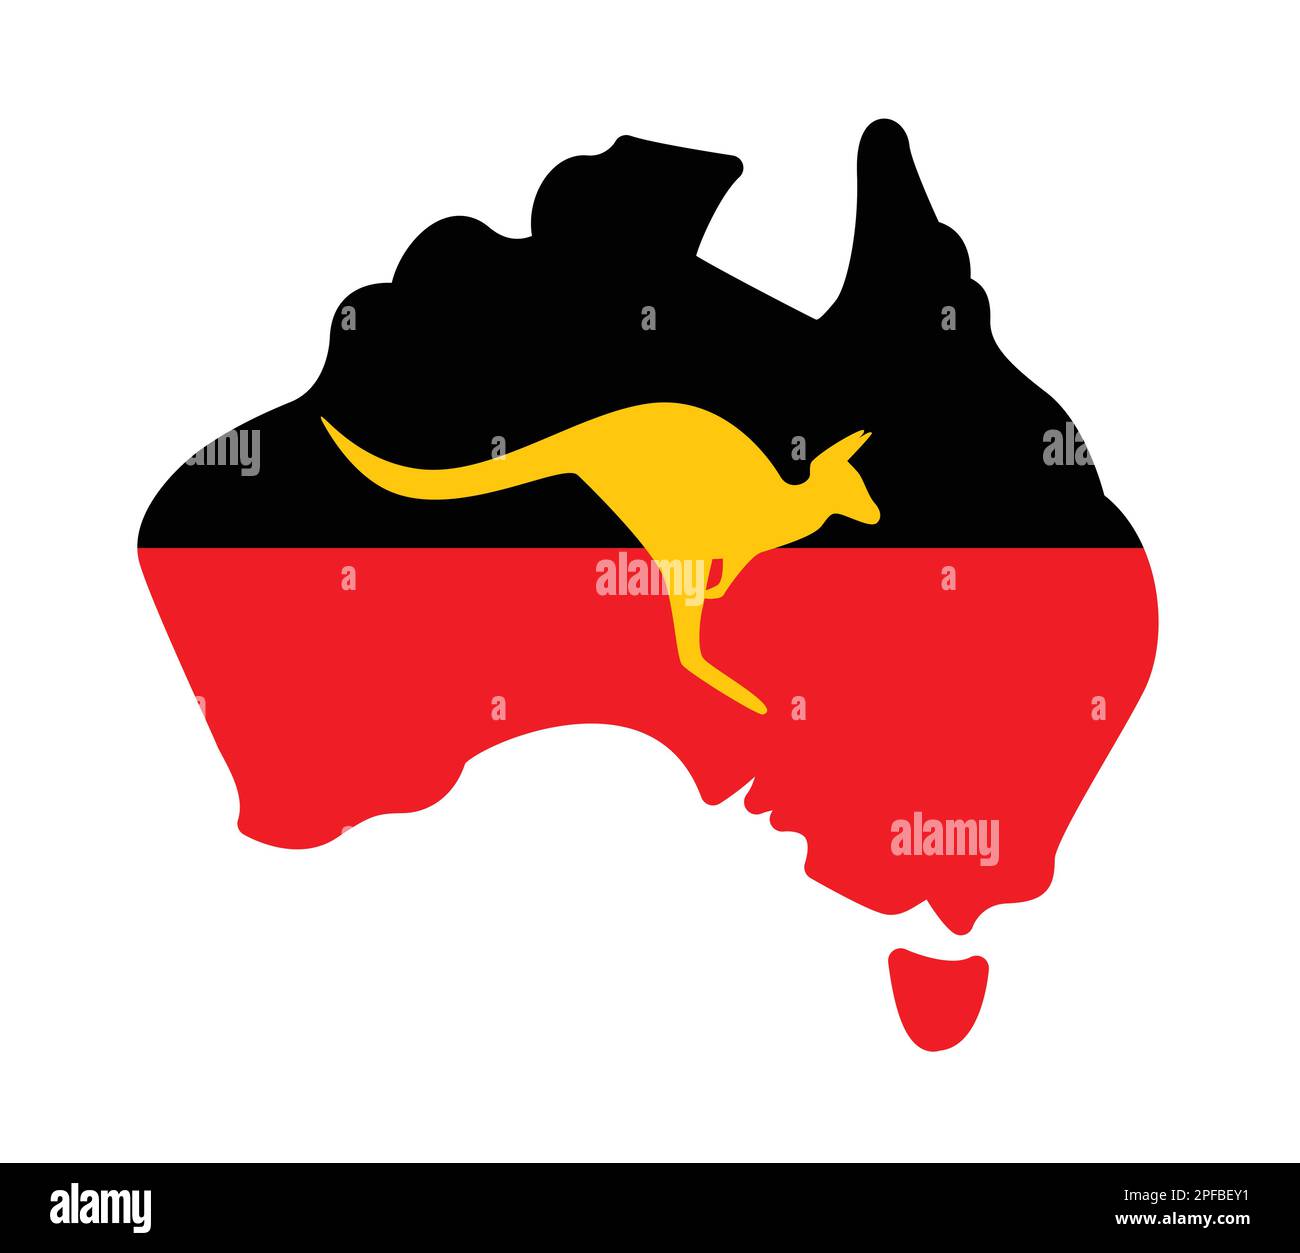 Australien vereinfachte Karte mit Flaggenelementen der Ureinwohner und Vektorsymbol für Känguru-Silhouetten auf weißem Hintergrund Stock Vektor